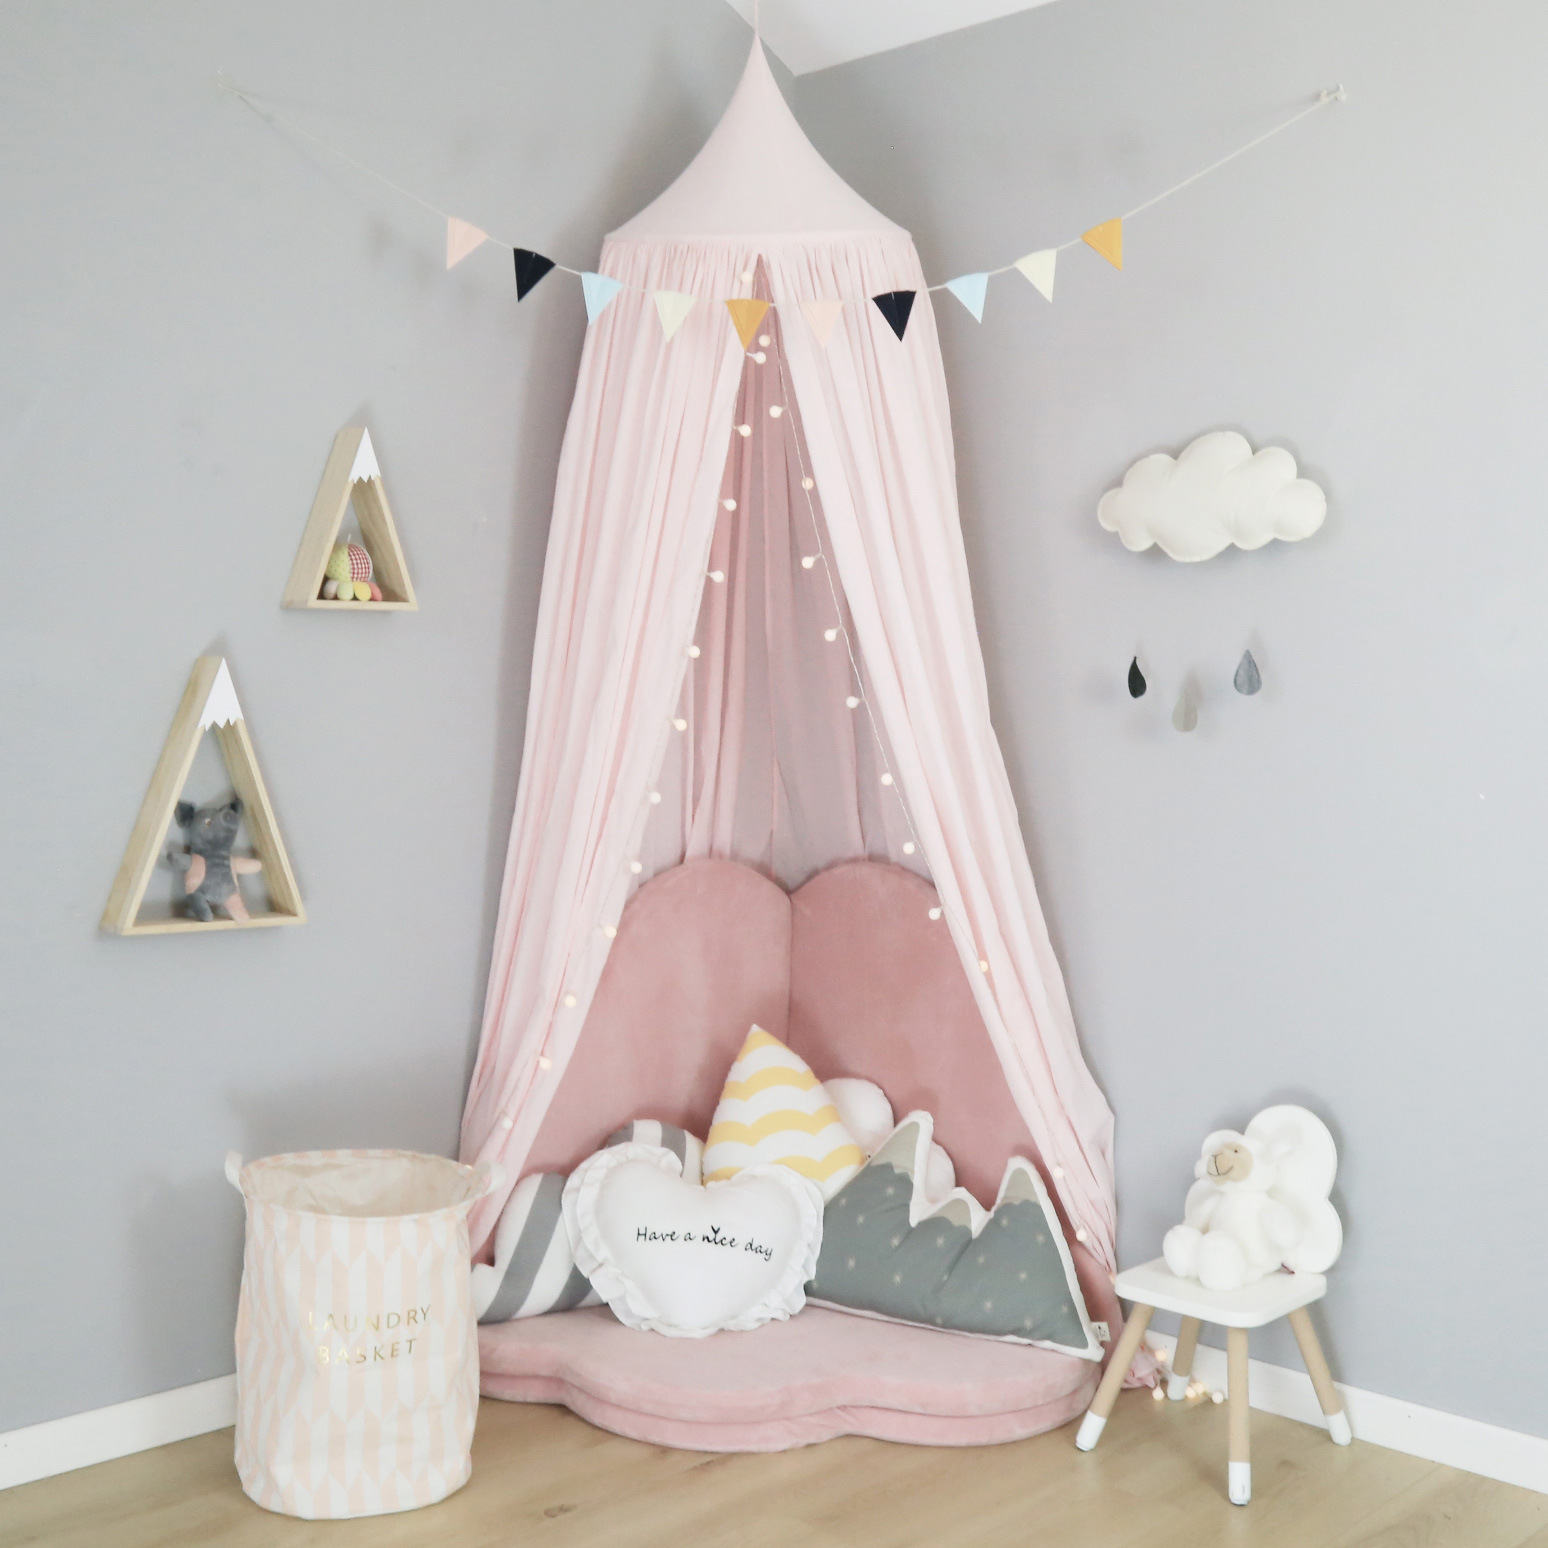 Kinderzelt Decke Bett Vorhang Indoor Princess Game House Baumwolle Hängebuch Leseecke Nordic Home Decoration